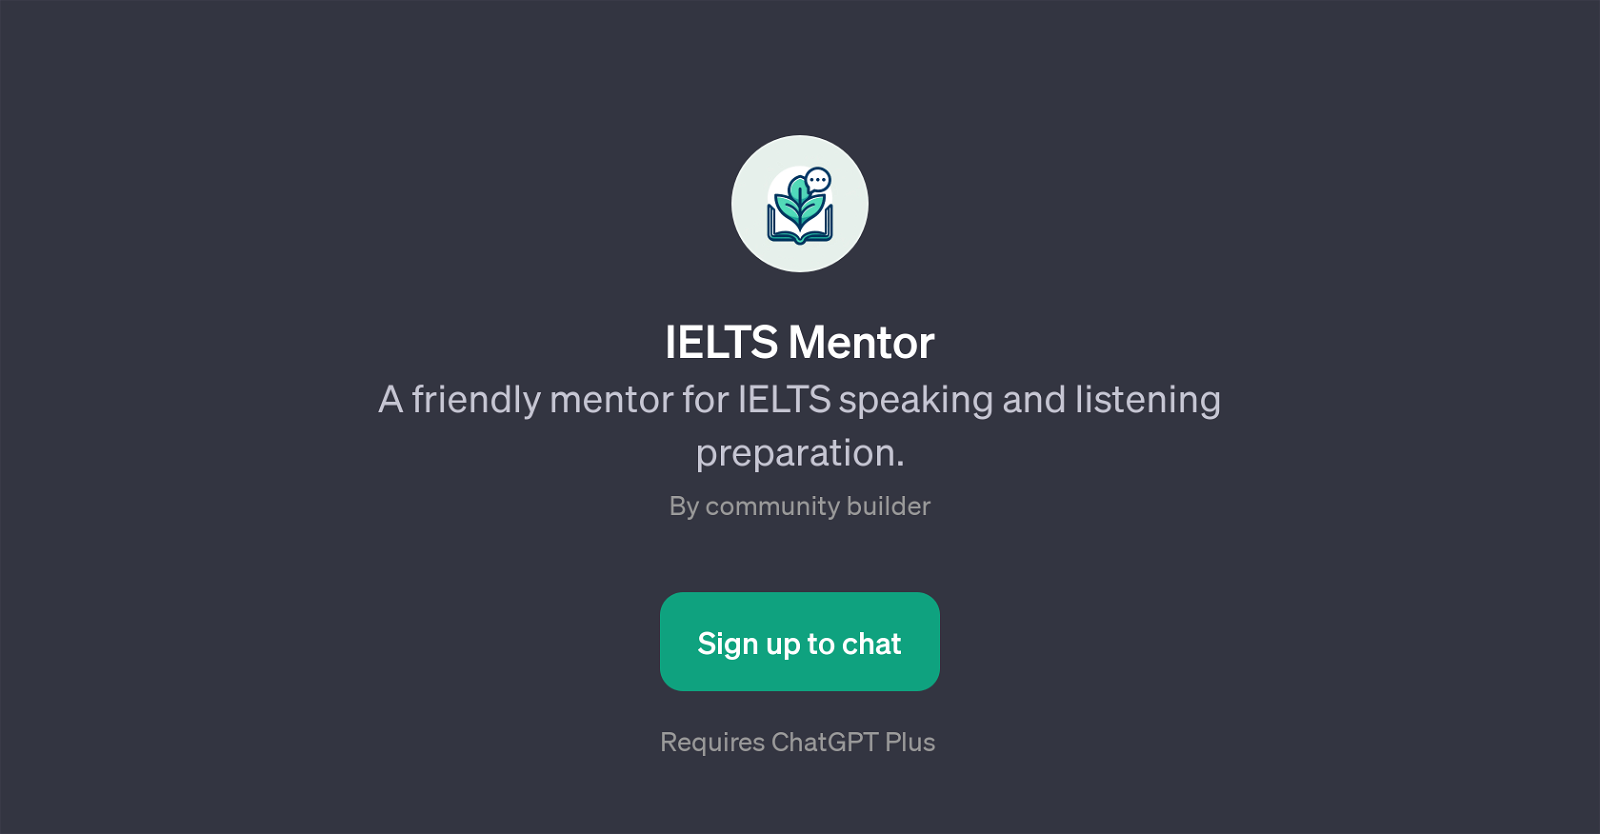 IELTS Mentor website